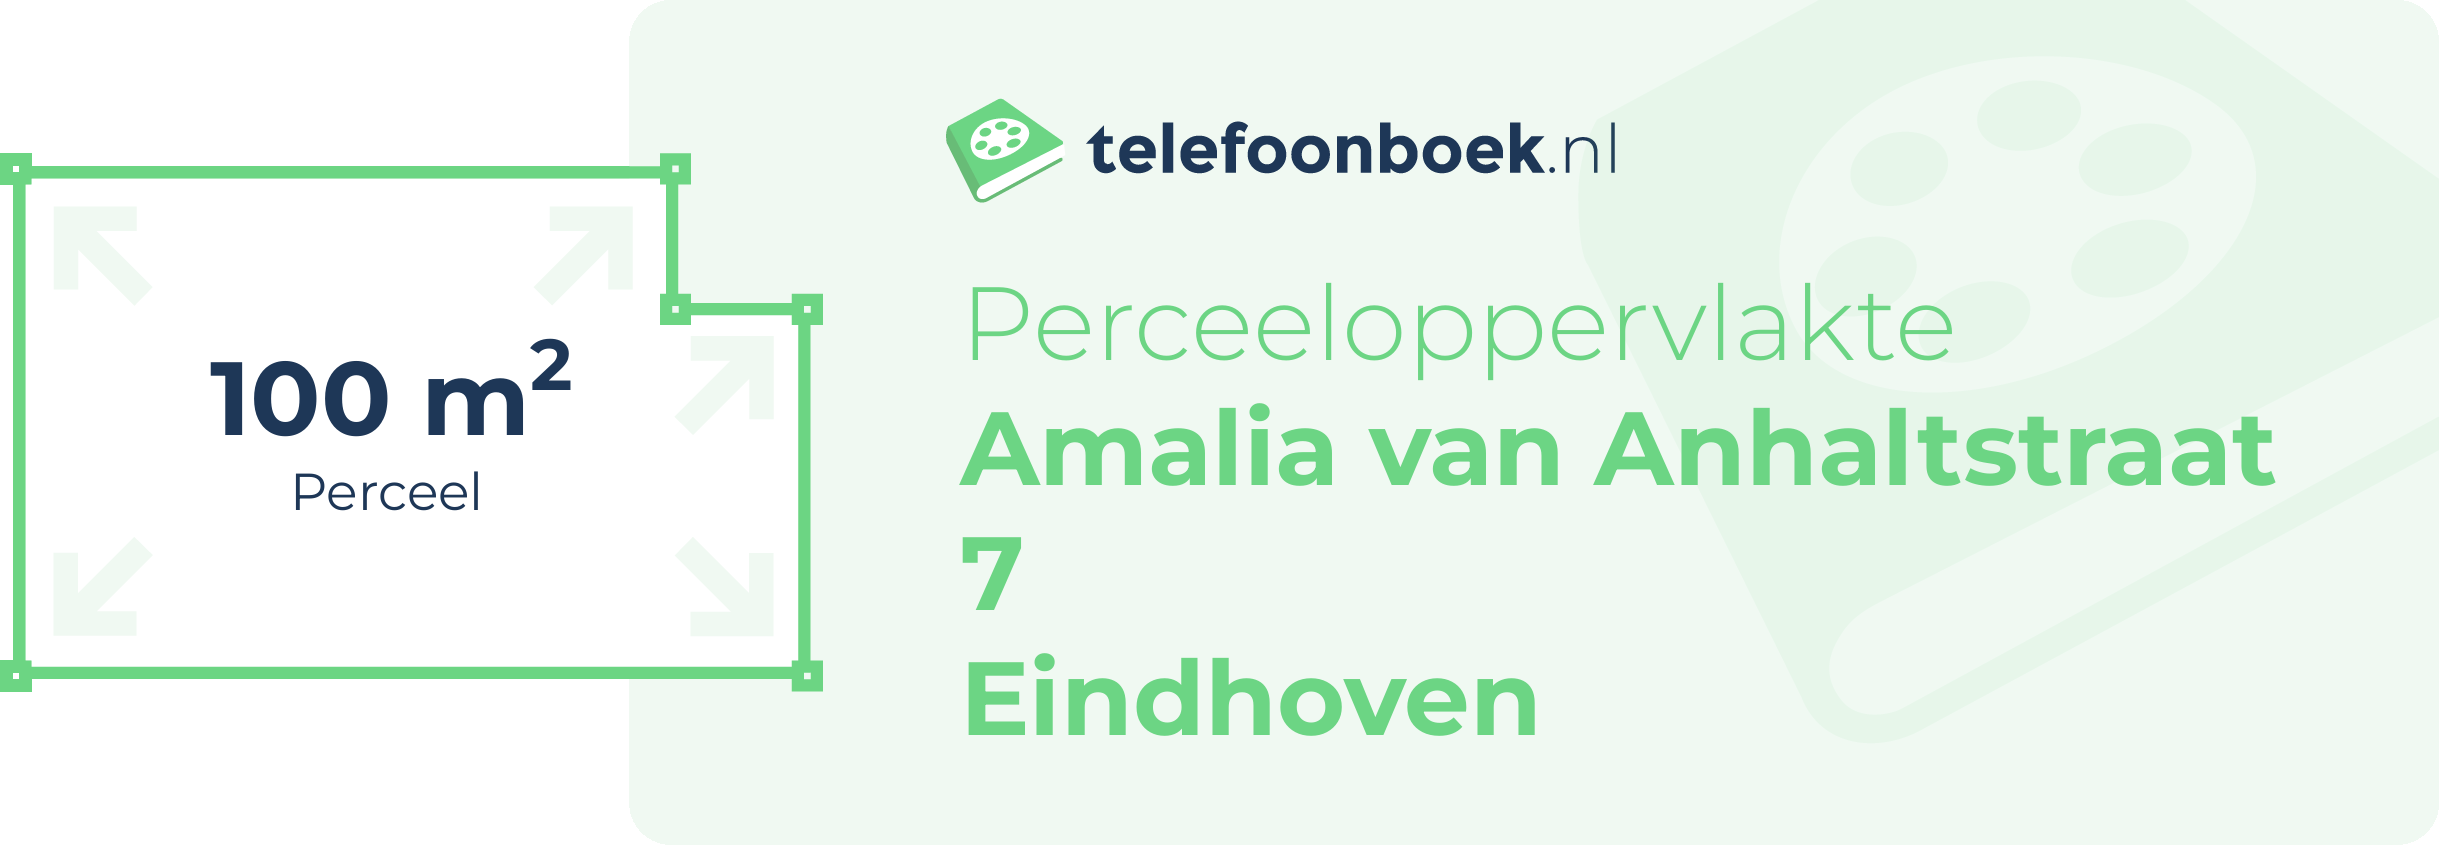 Perceeloppervlakte Amalia Van Anhaltstraat 7 Eindhoven